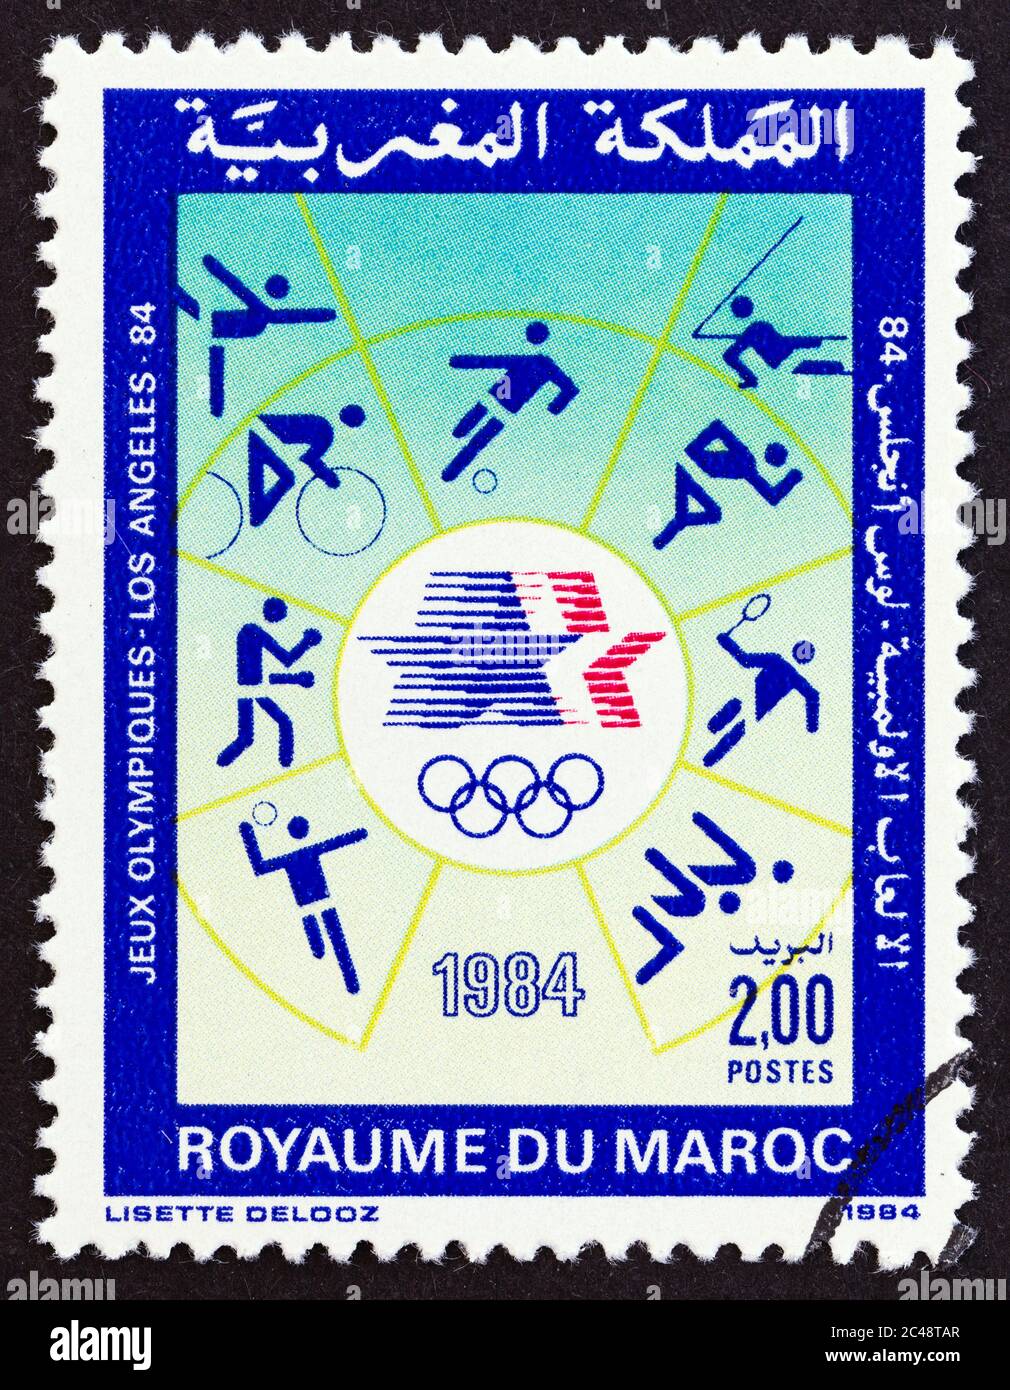 MAROCCO - CIRCA 1984: Un francobollo stampato in Marocco dal '1984 Olimpiadi estive' edizione mostra sport, circa 1984. Foto Stock